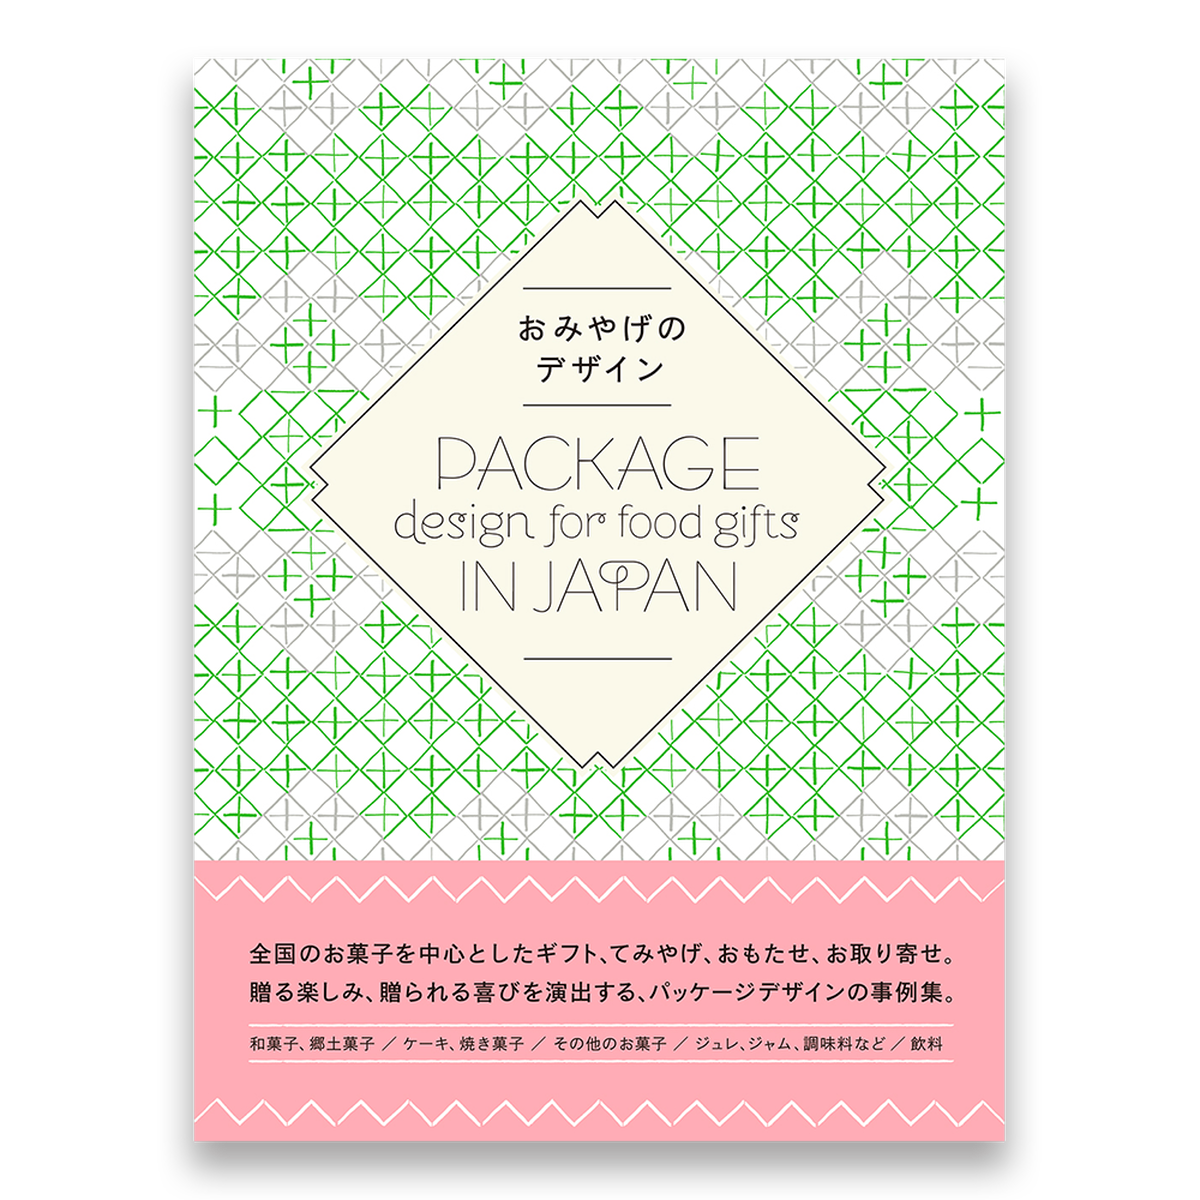 おみやげのデザイン Package Design For Food Gifts In Japan Bnnオンラインストア